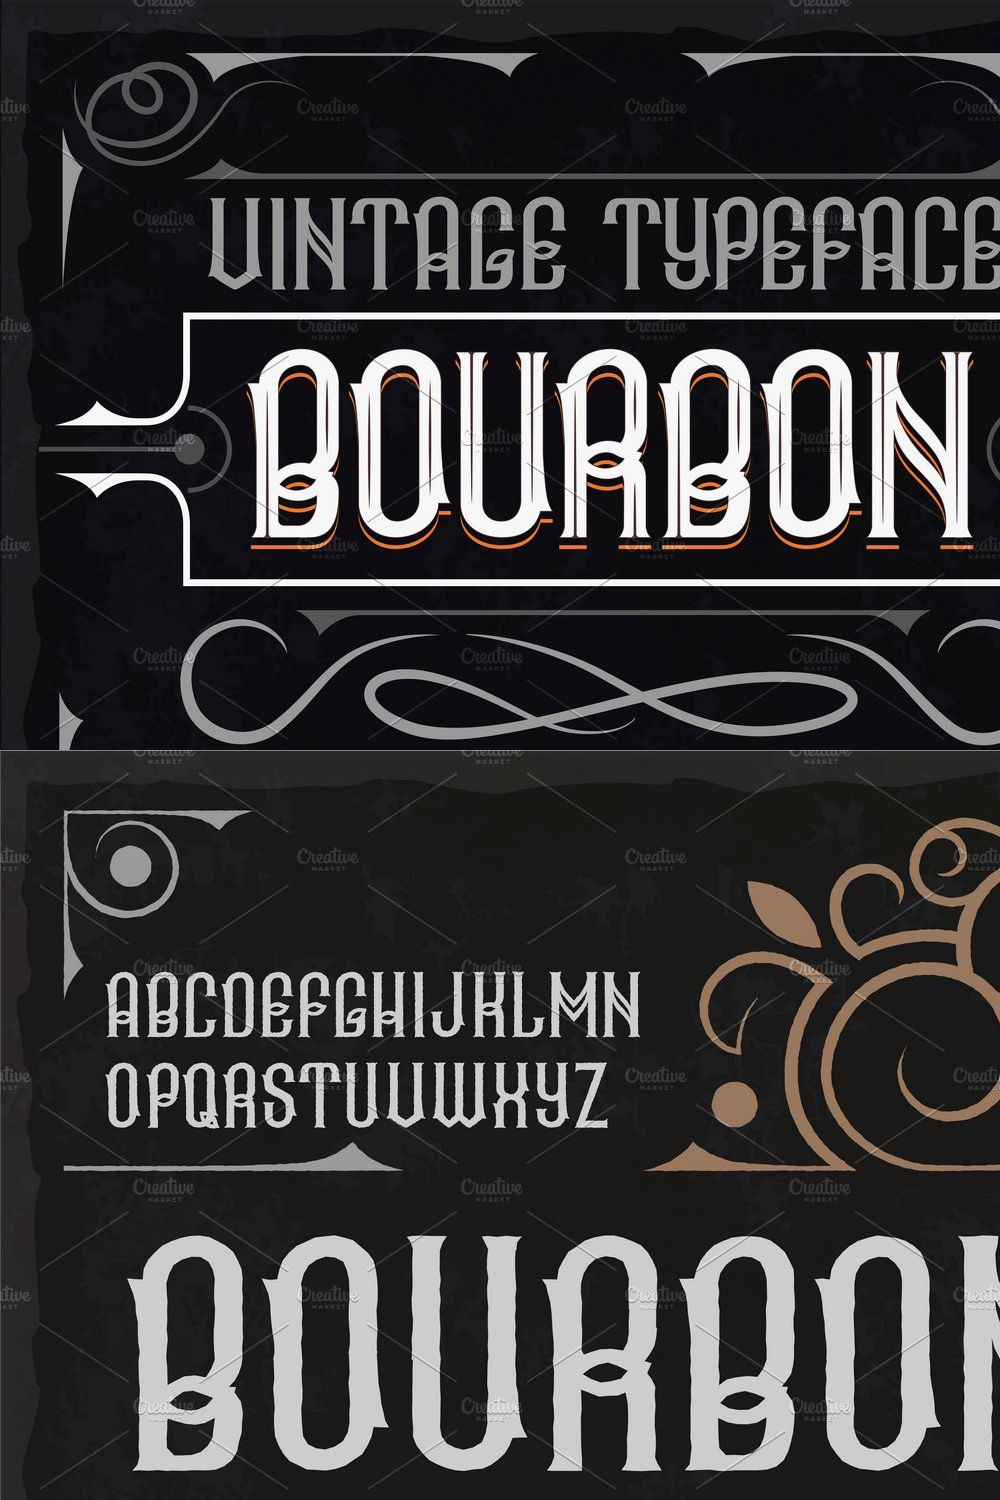 Vintage label typeface Bourbon pinterest preview image.